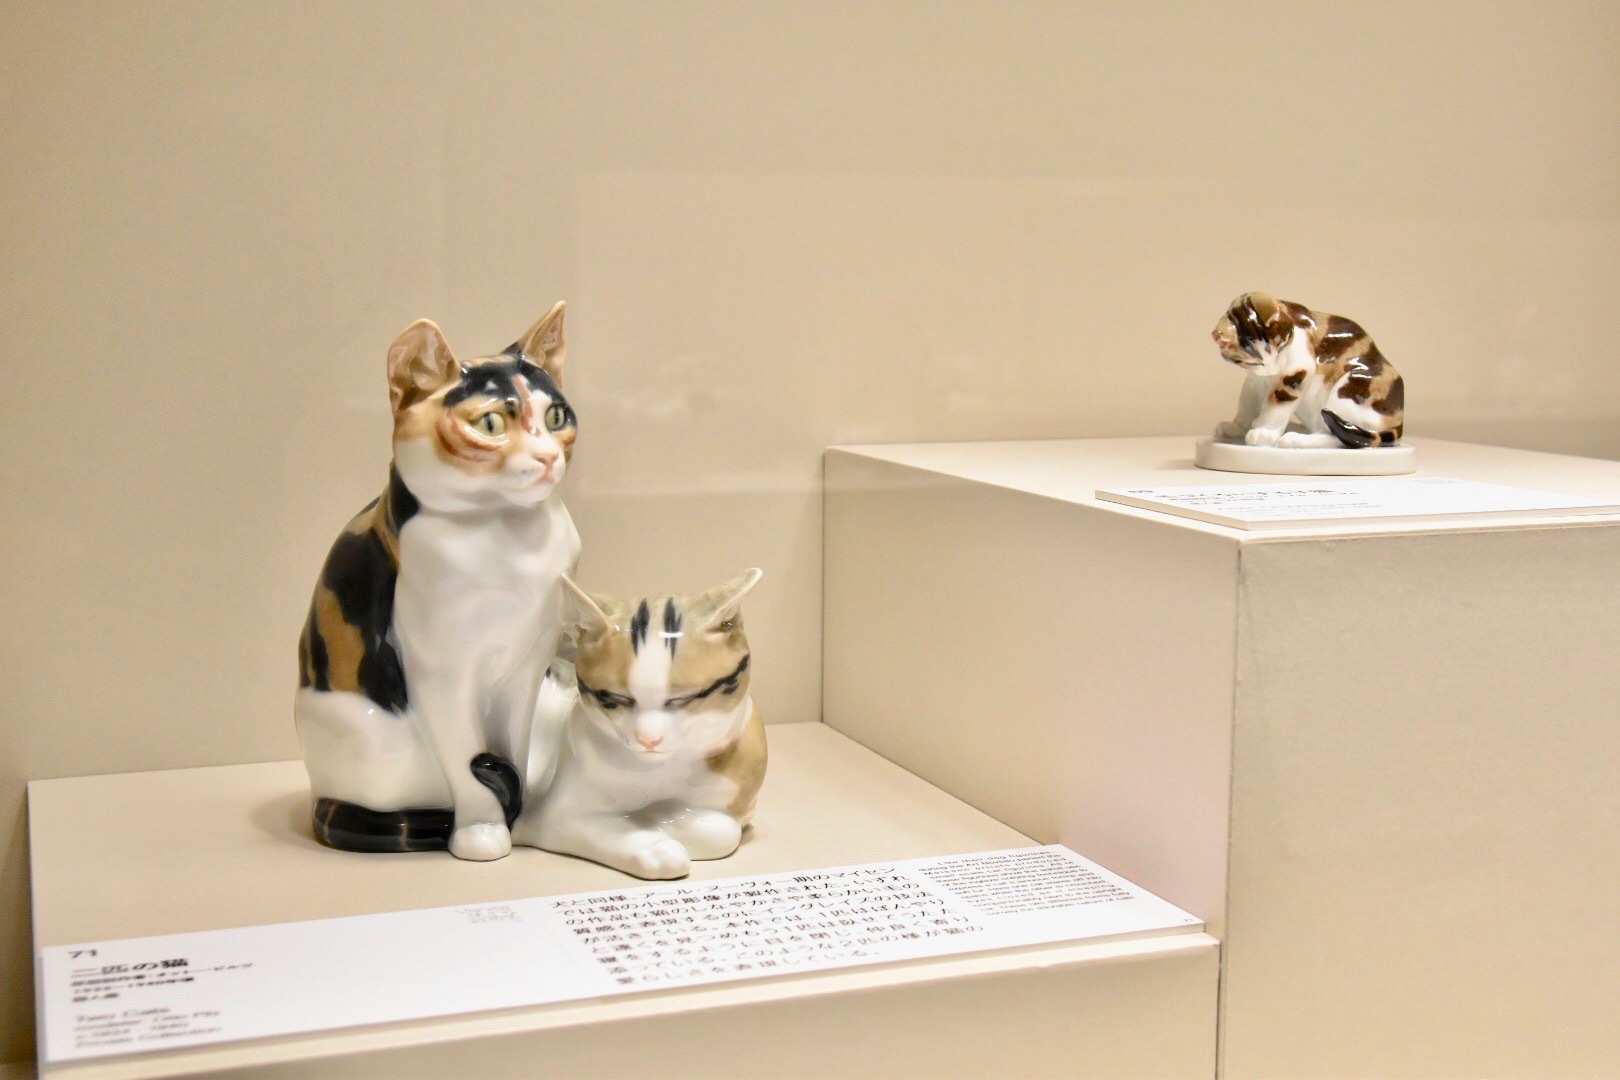 左：原型制作者：オットー・ビルツ　《二匹の猫》　1934-1940年頃　個人蔵、右：原型制作者：エーリッヒ・オスカー・ヘーゼル　《毛づくろいする子猫》　1917-1923年頃　個人蔵